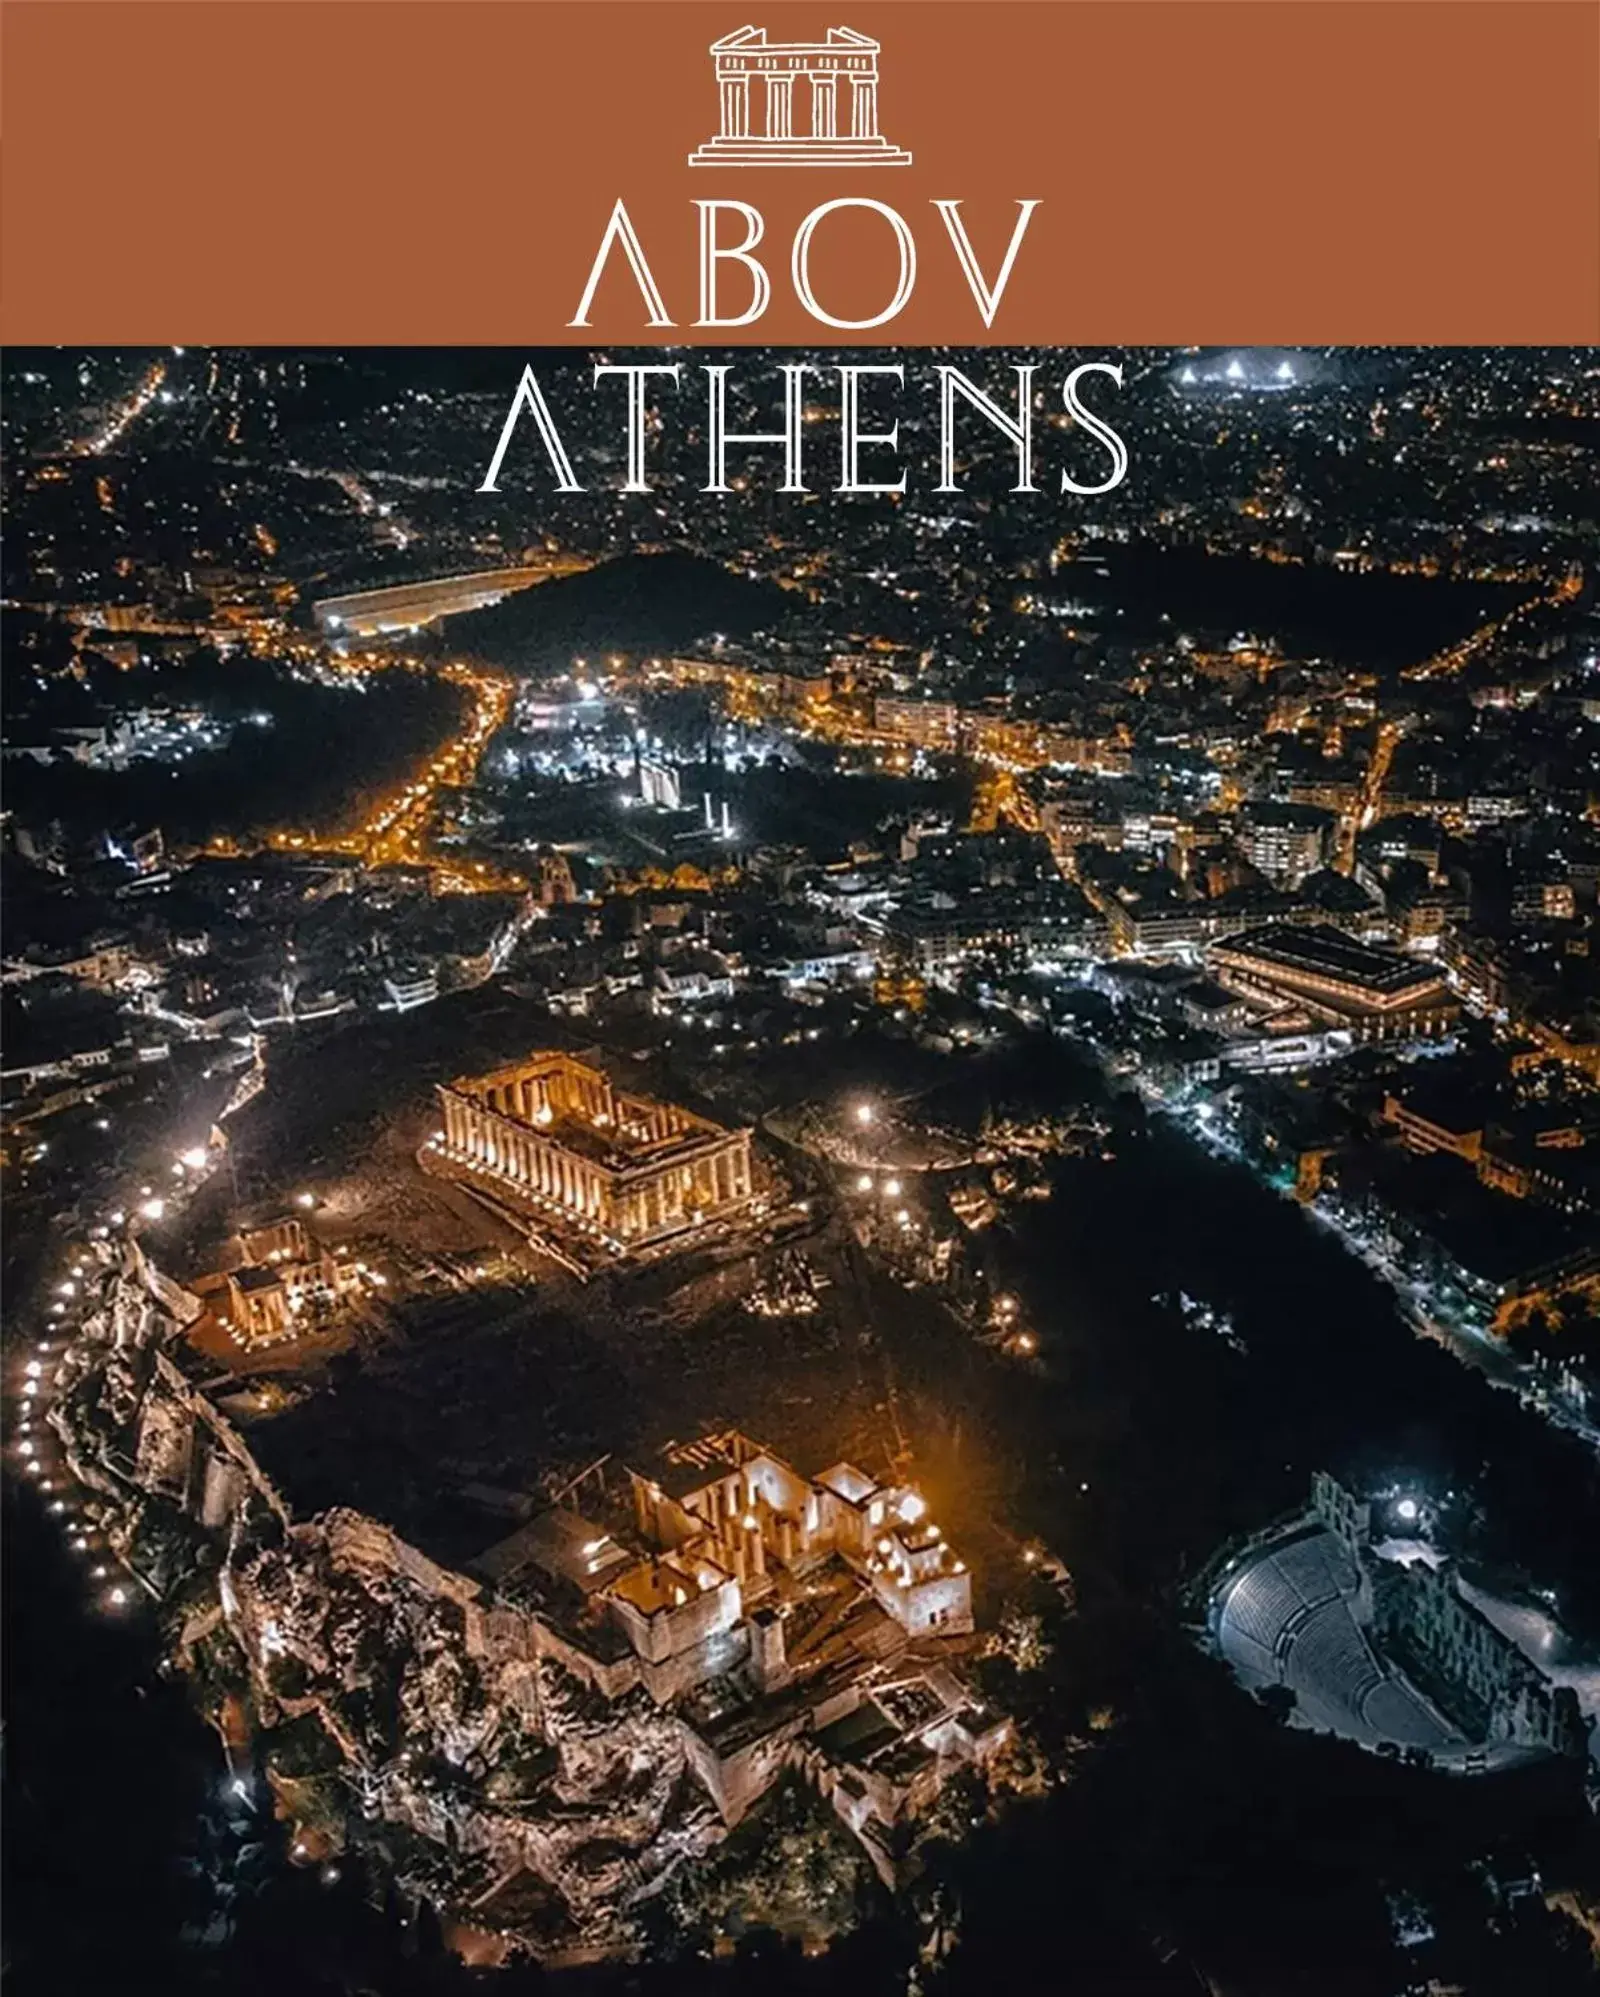 Bird's eye view, Bird's-eye View in AboV Athens